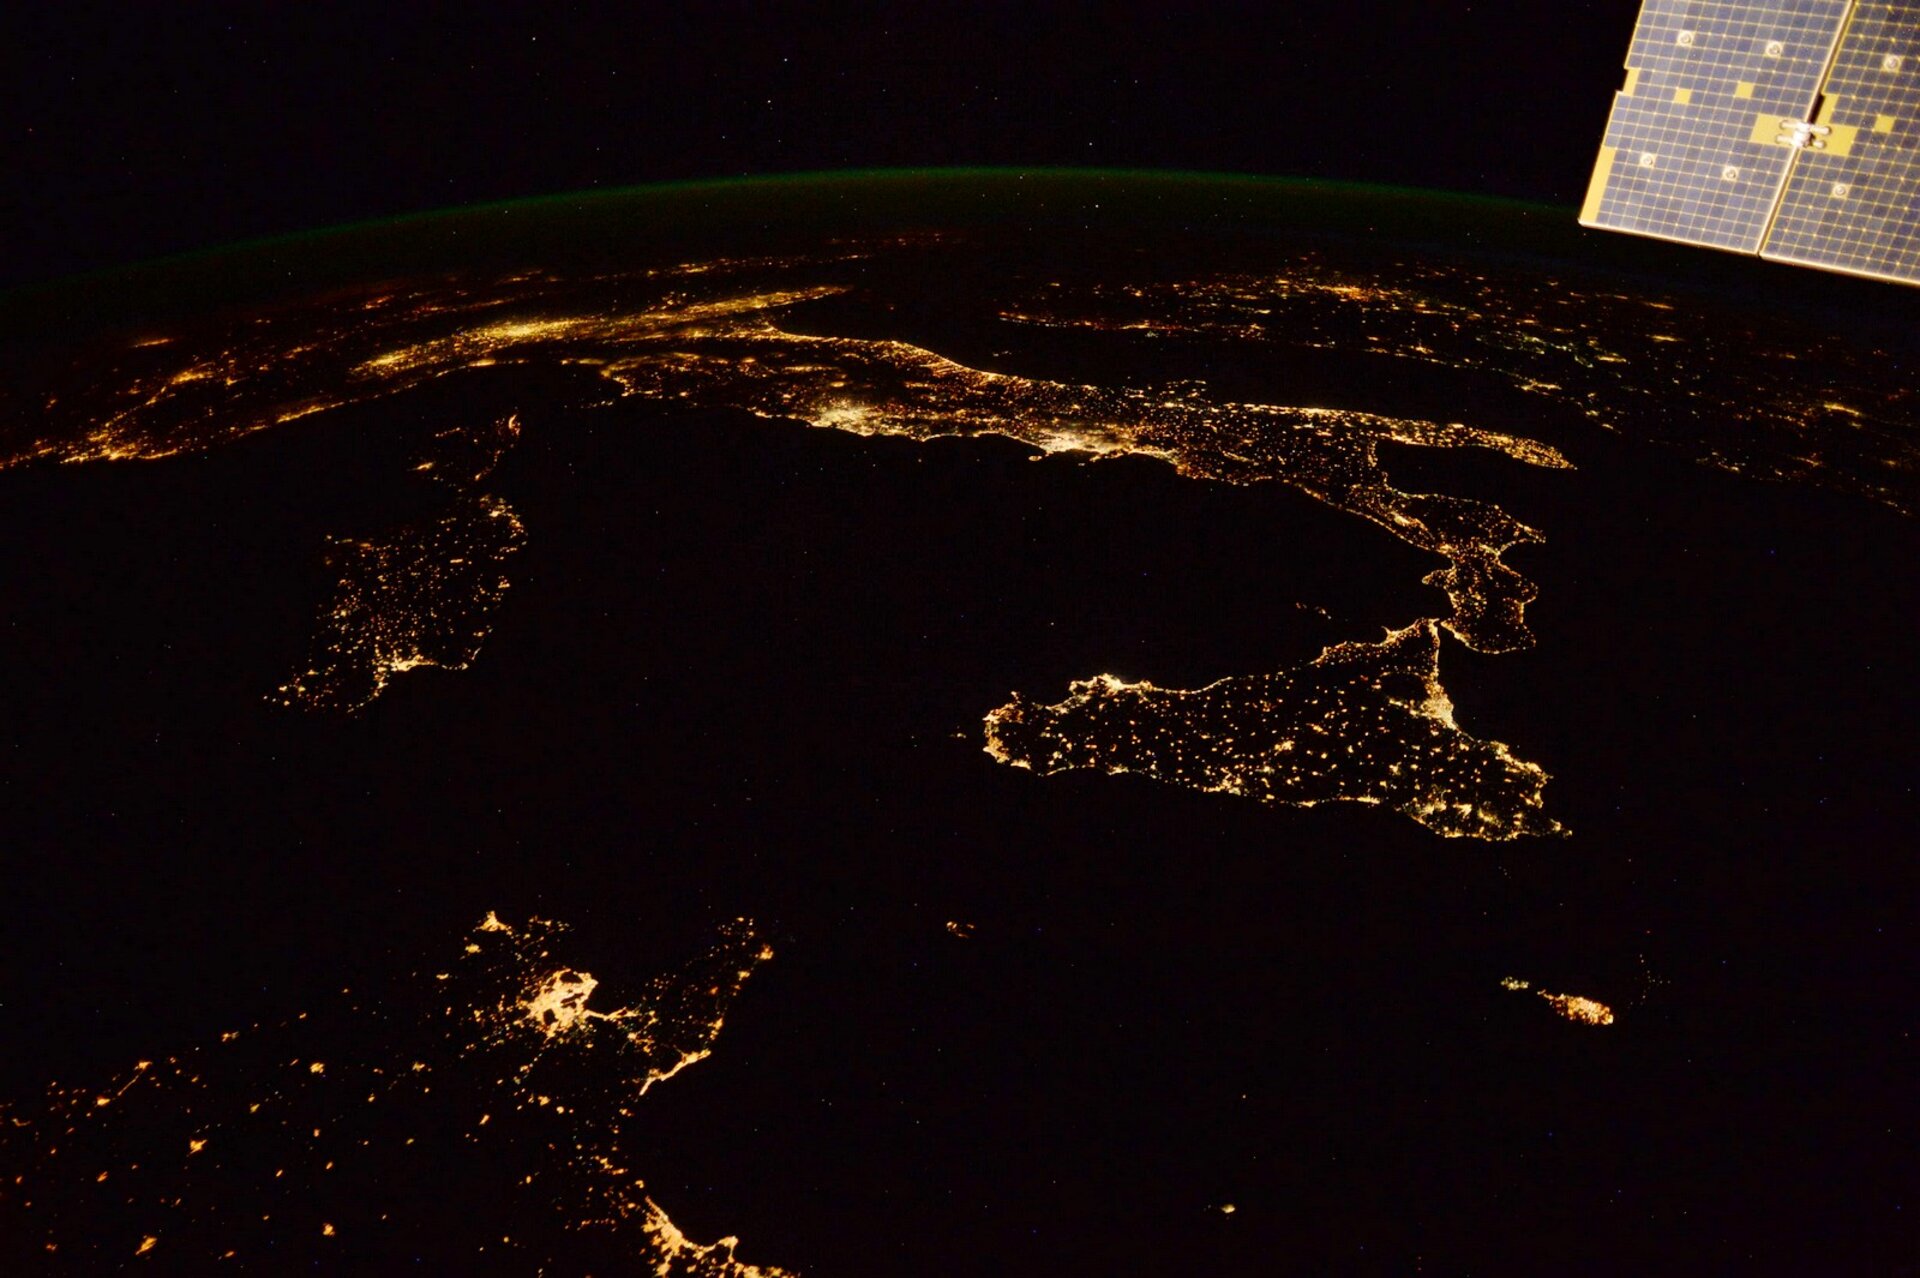 L'Italia di notte in uno scatto dallo spazio dell'astronauta ESA Paolo Nespoli 